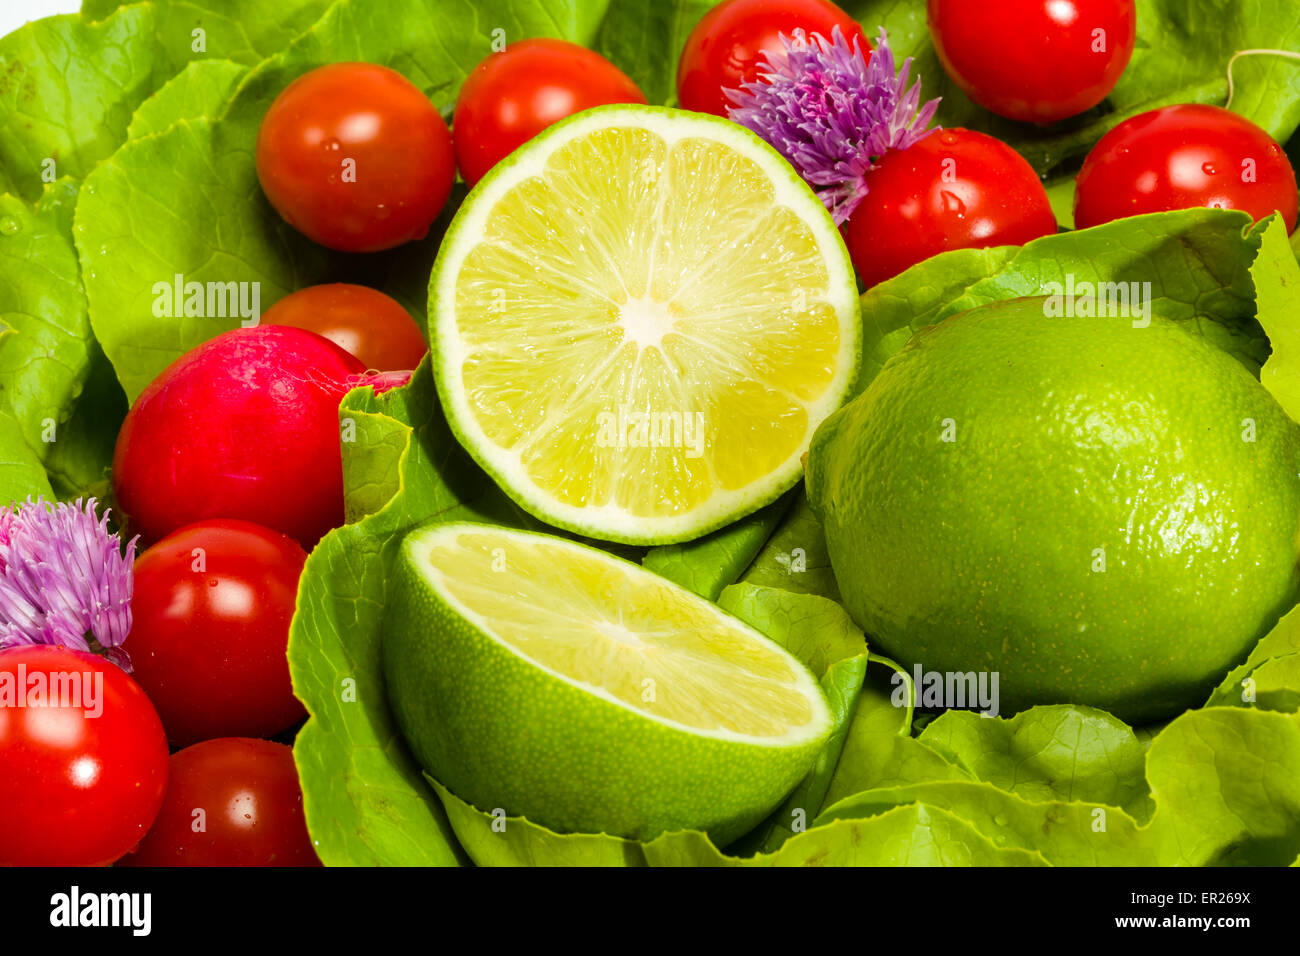 Laitue, radis, ciboulette, citron vert et tomates cerises Banque D'Images